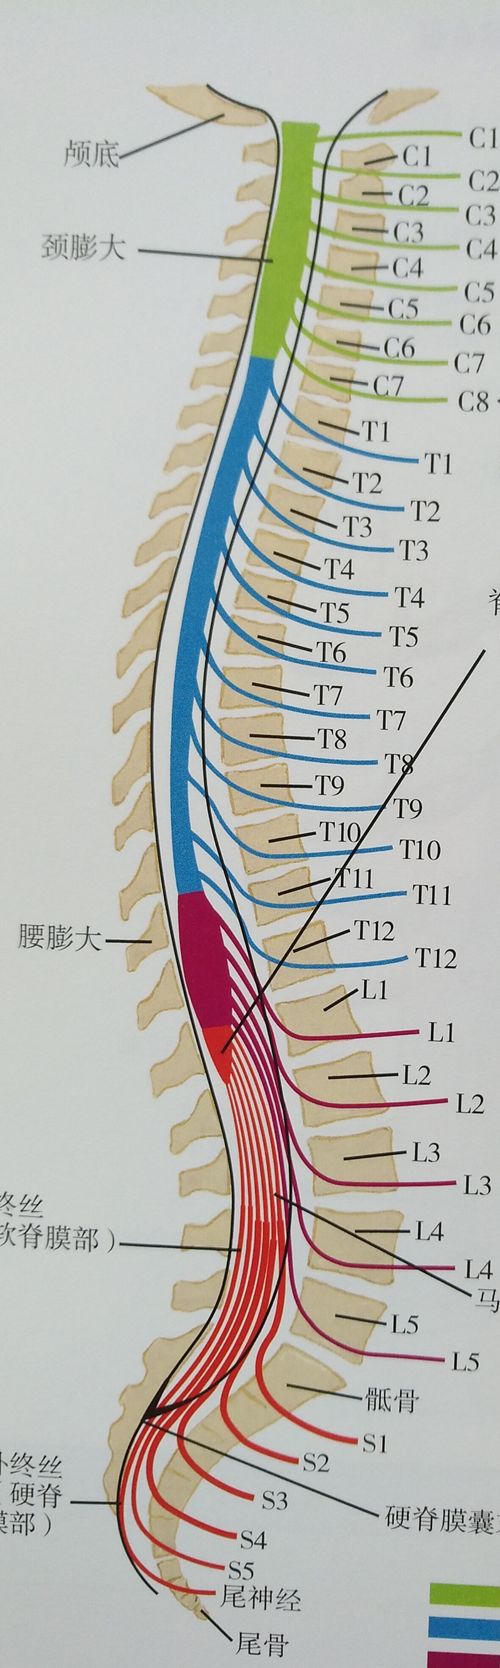 l3s1椎间盘位置图图片